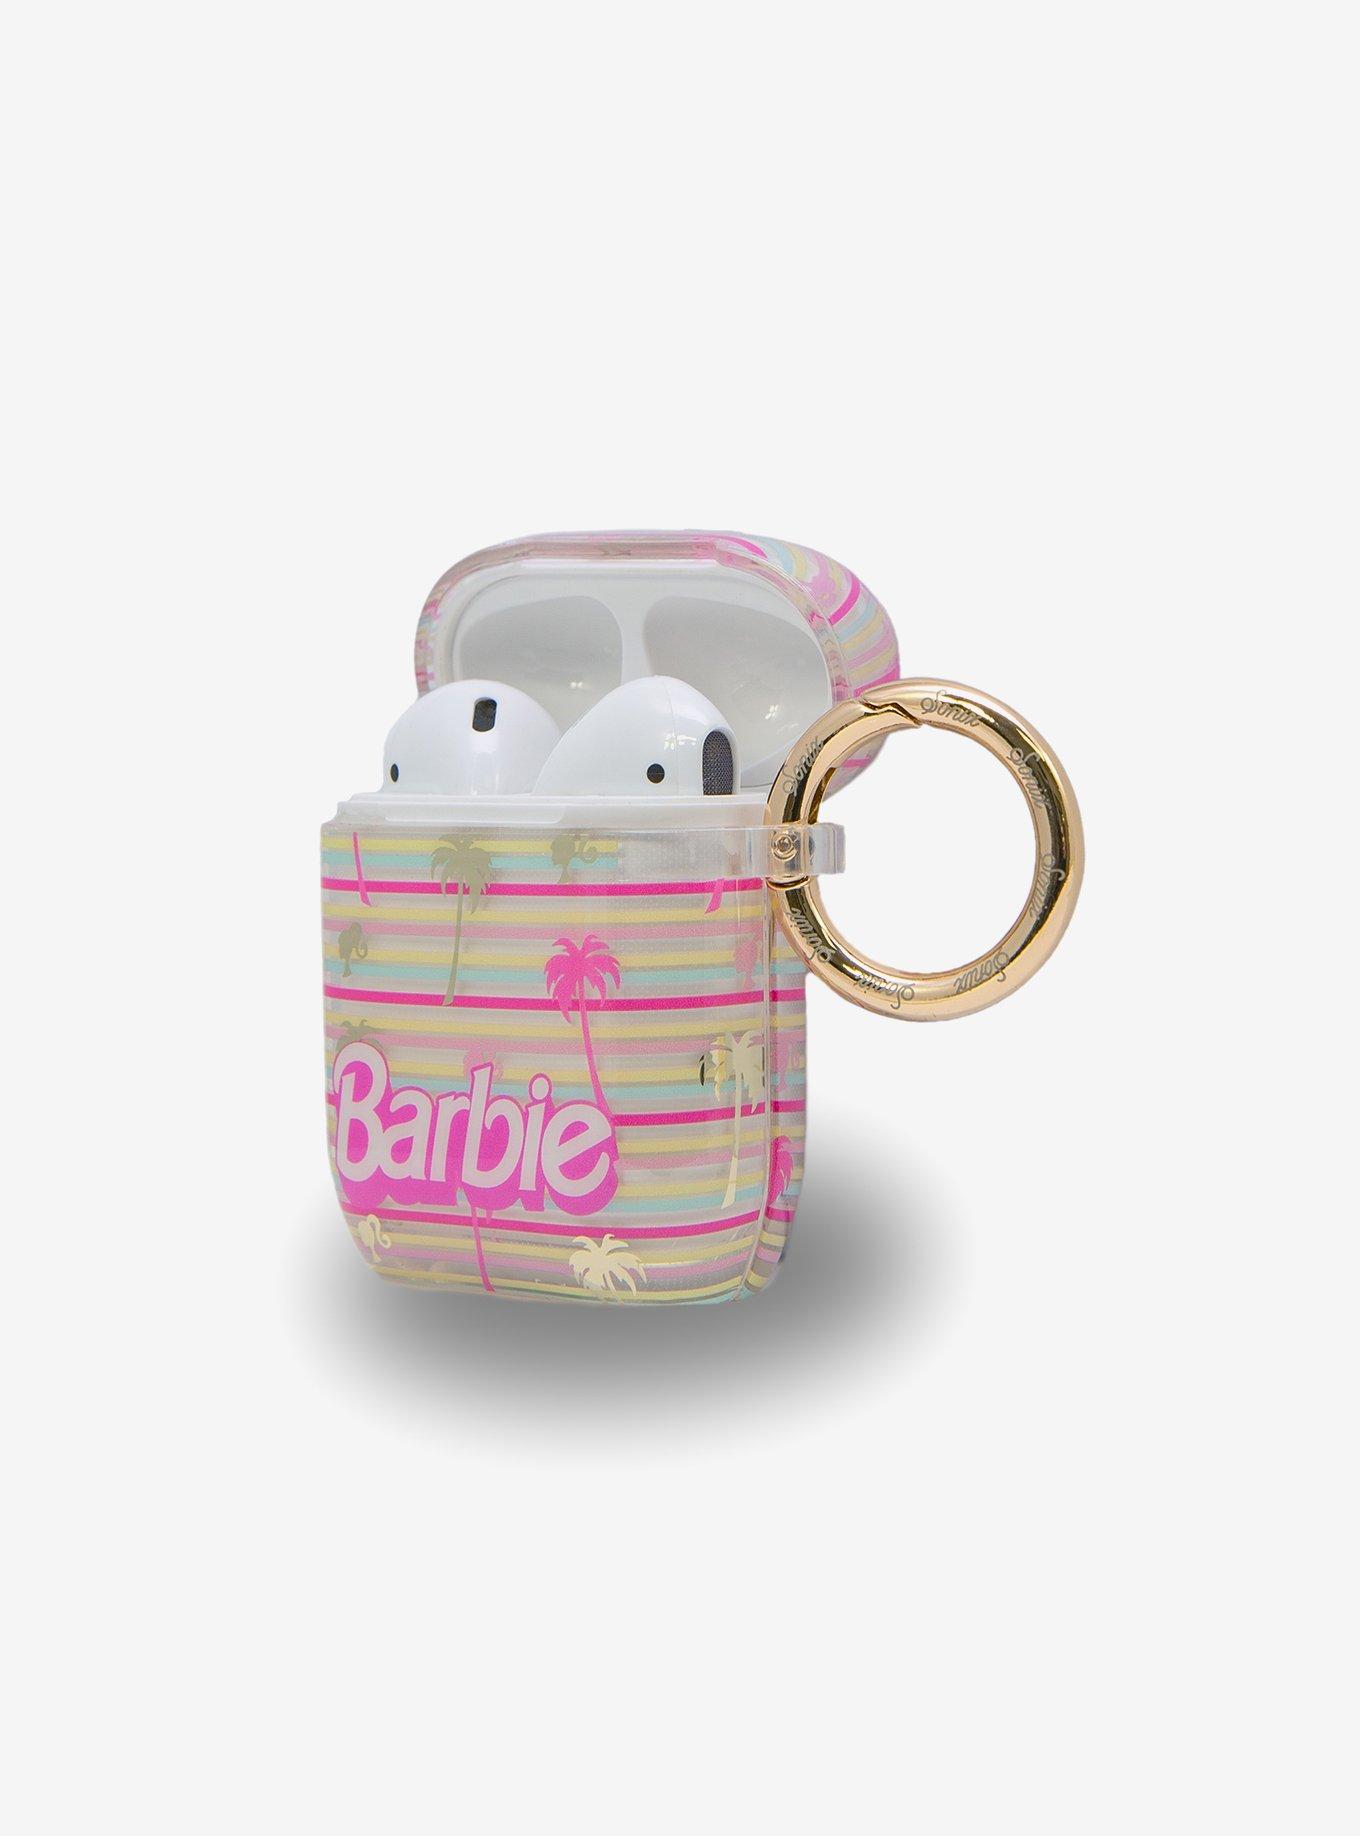 Sonix x Barbie Palm Paradise AirPods Gen 1/2 Case